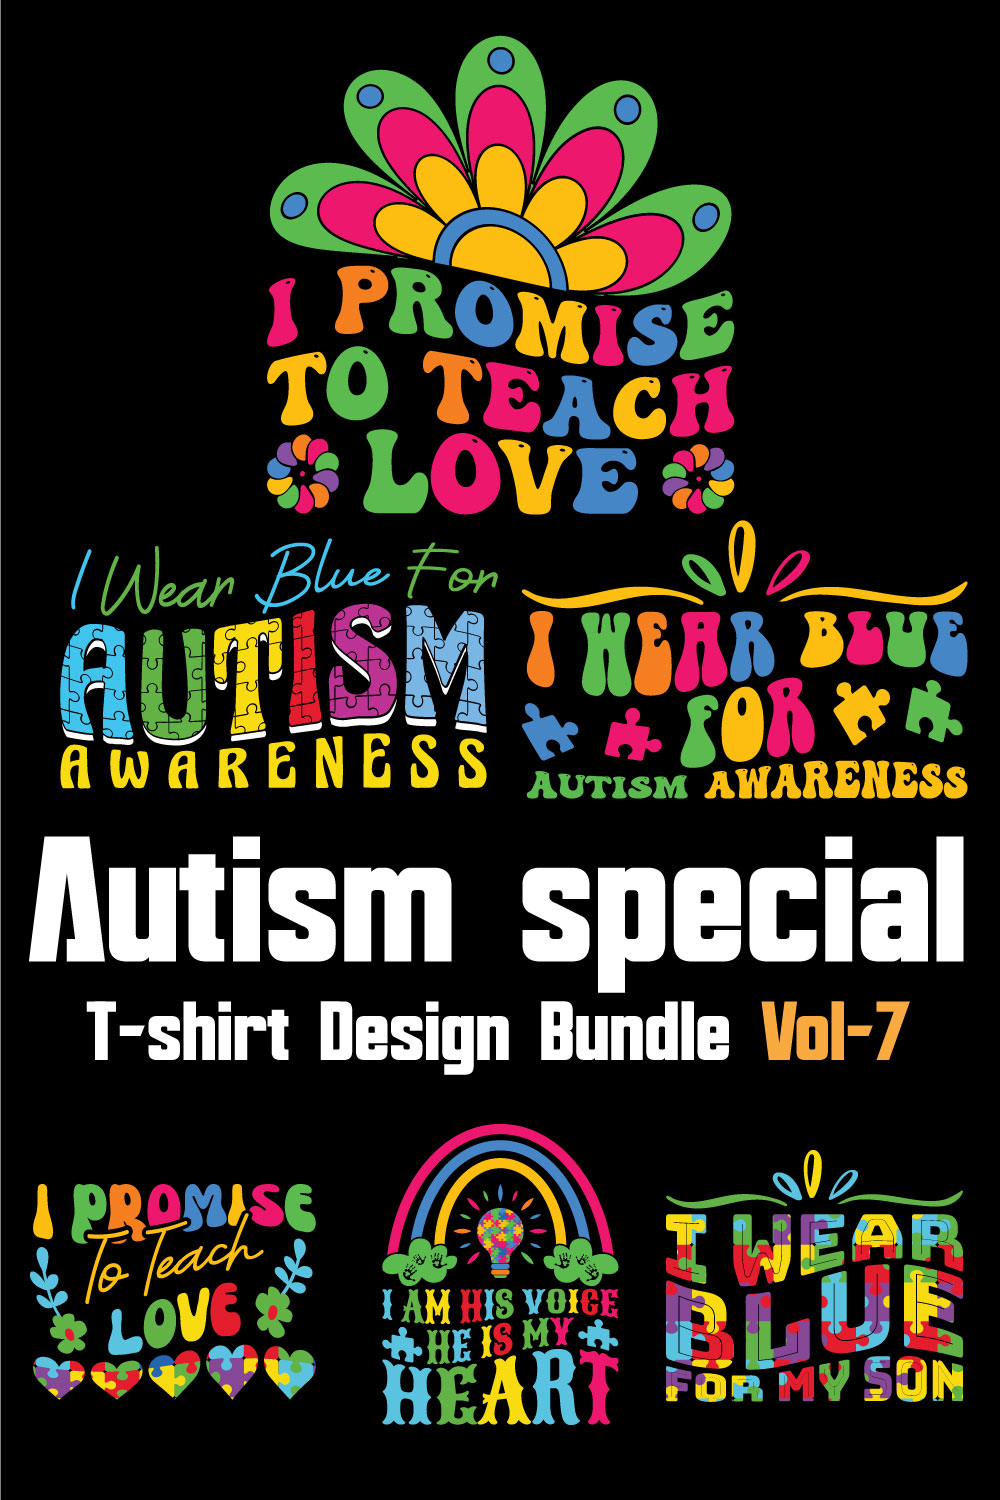 Autism Special T-shirt Design Bundle Vol-7 pinterest preview image.